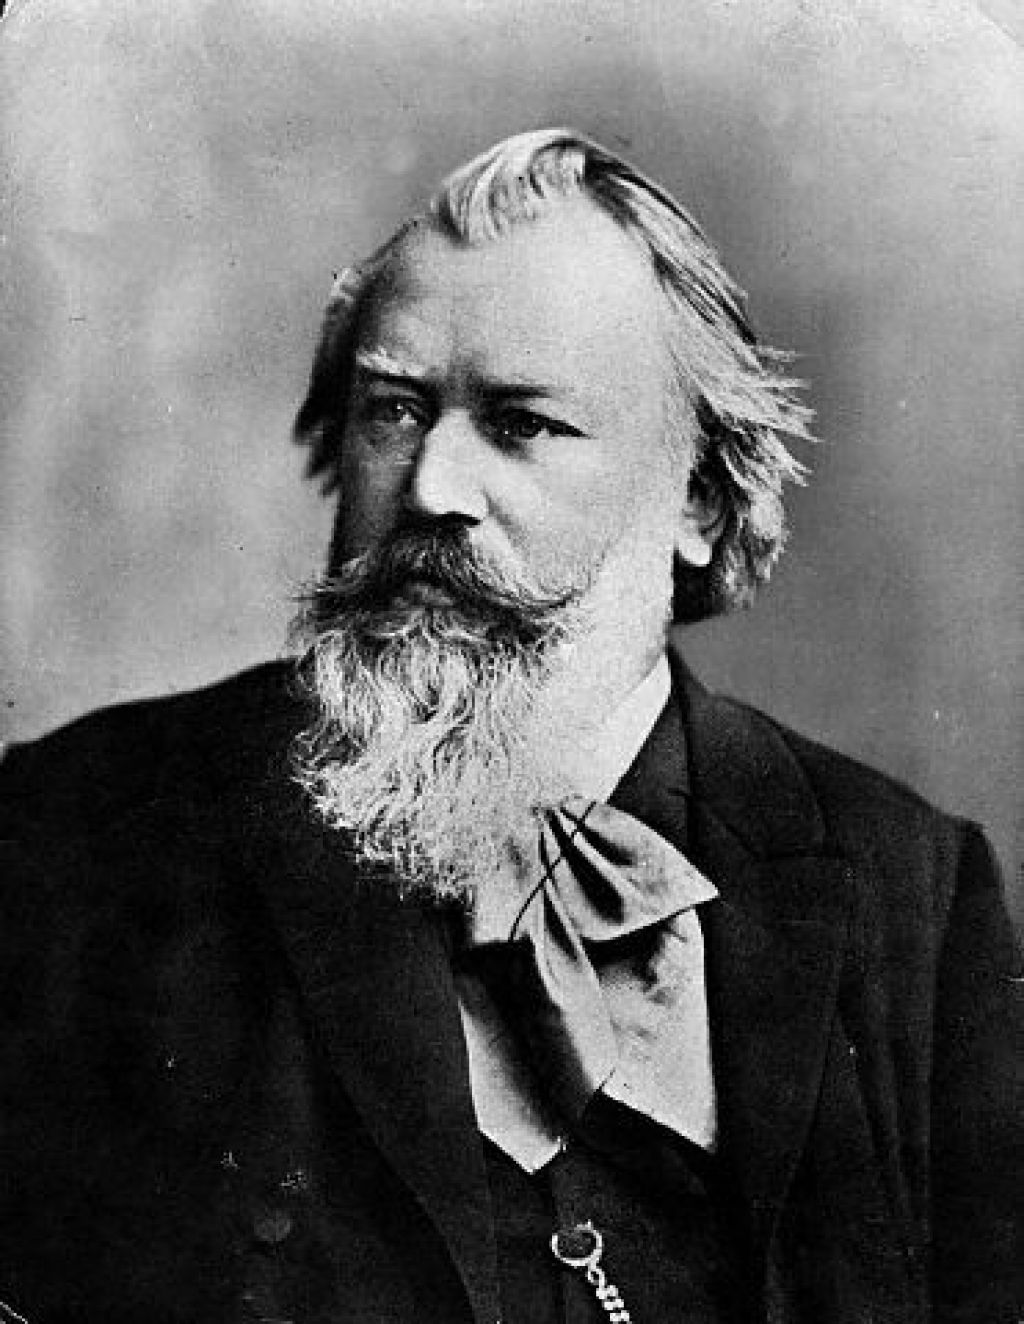 Anekdota o Johannesu Brahmsu